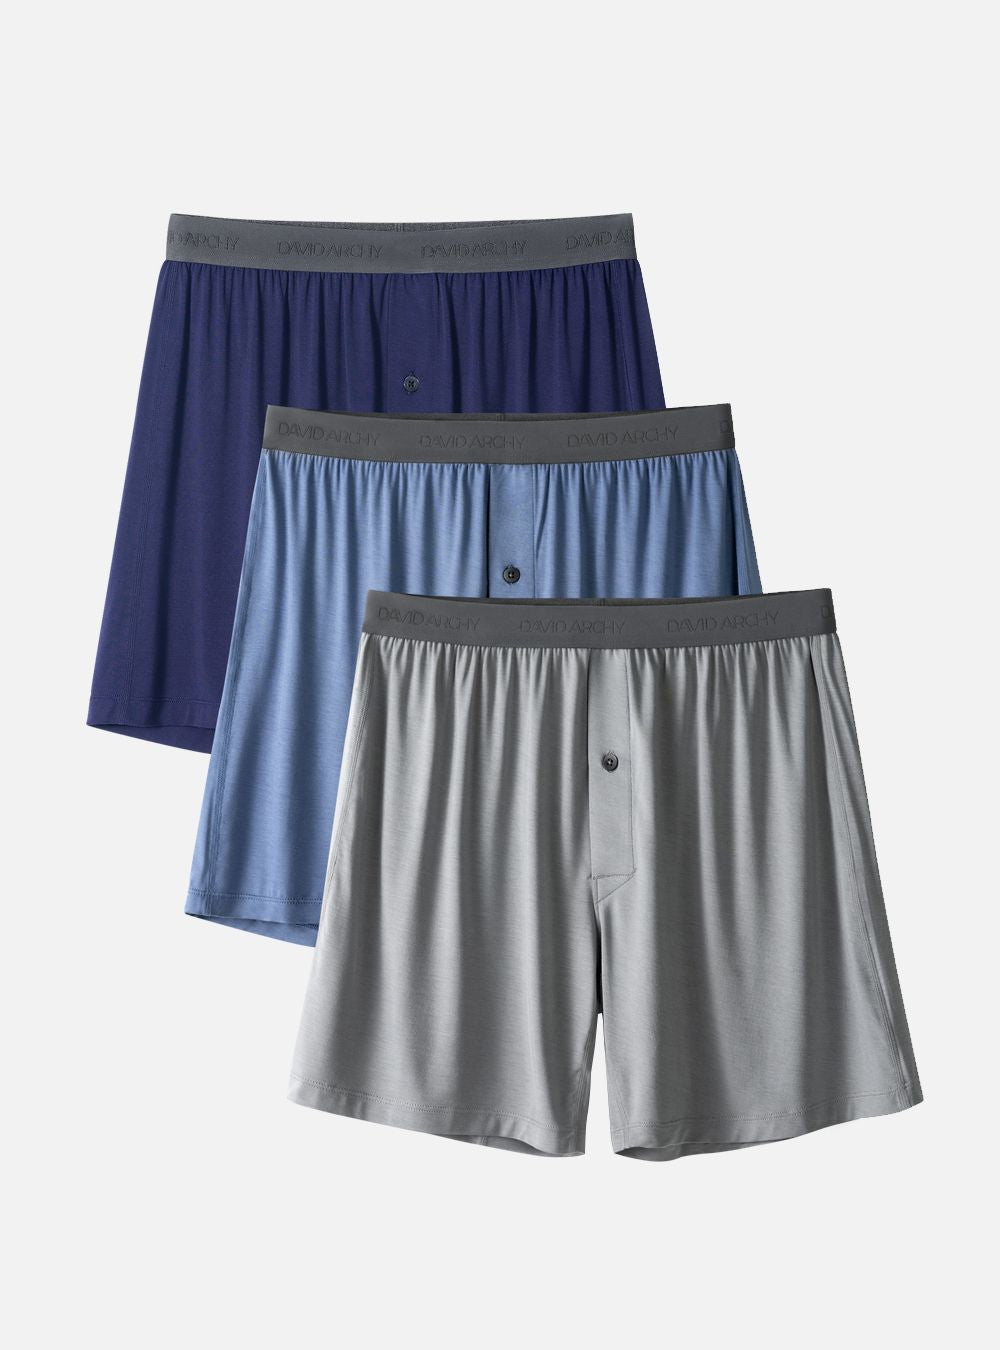 Buy DAVID ARCHY Men's Underwear Premium Cotton Boxer Briefs Dual Pouch  Underwear with Fly Meundies 3 or 4 Pack Online at desertcartKUWAIT